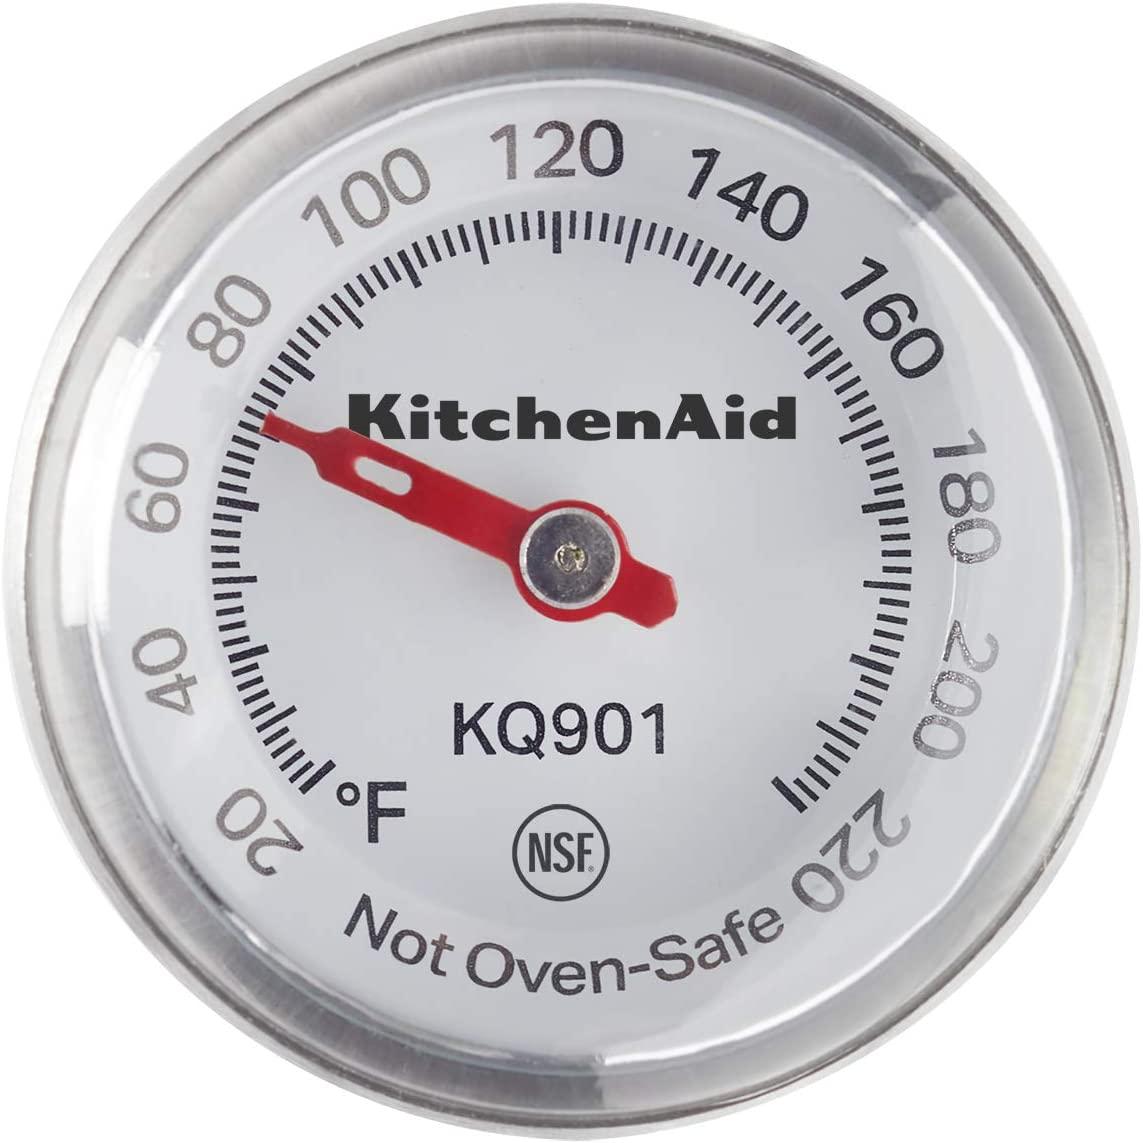 KitchenAid KQ900 Single Event Digital Timer, 2.5 Inches, Black